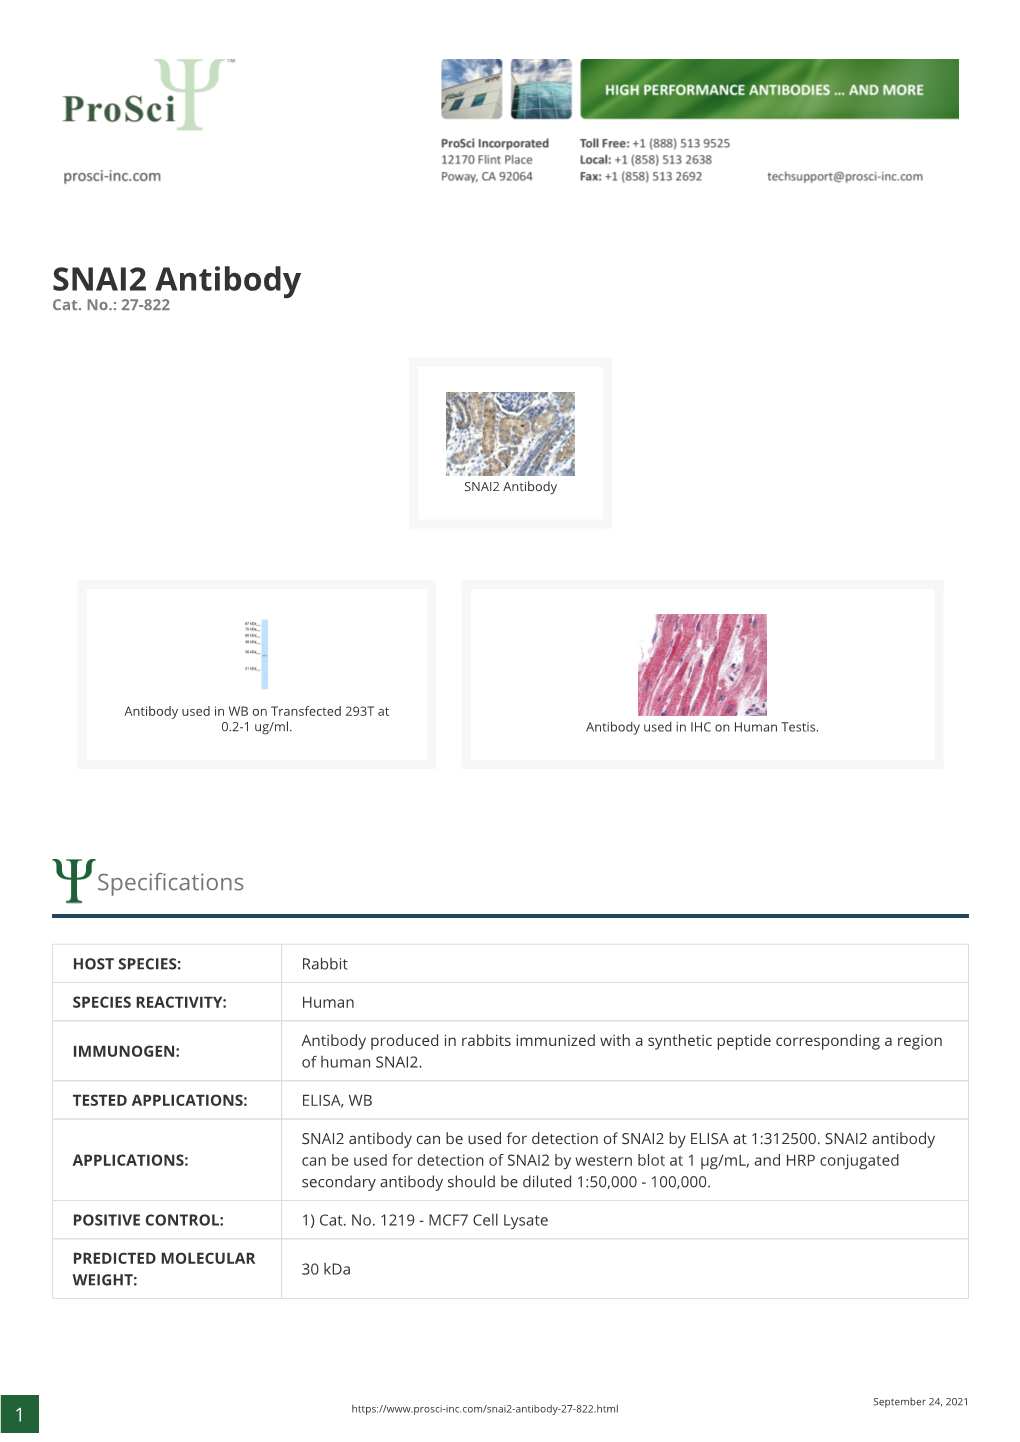 SNAI2 Antibody Cat